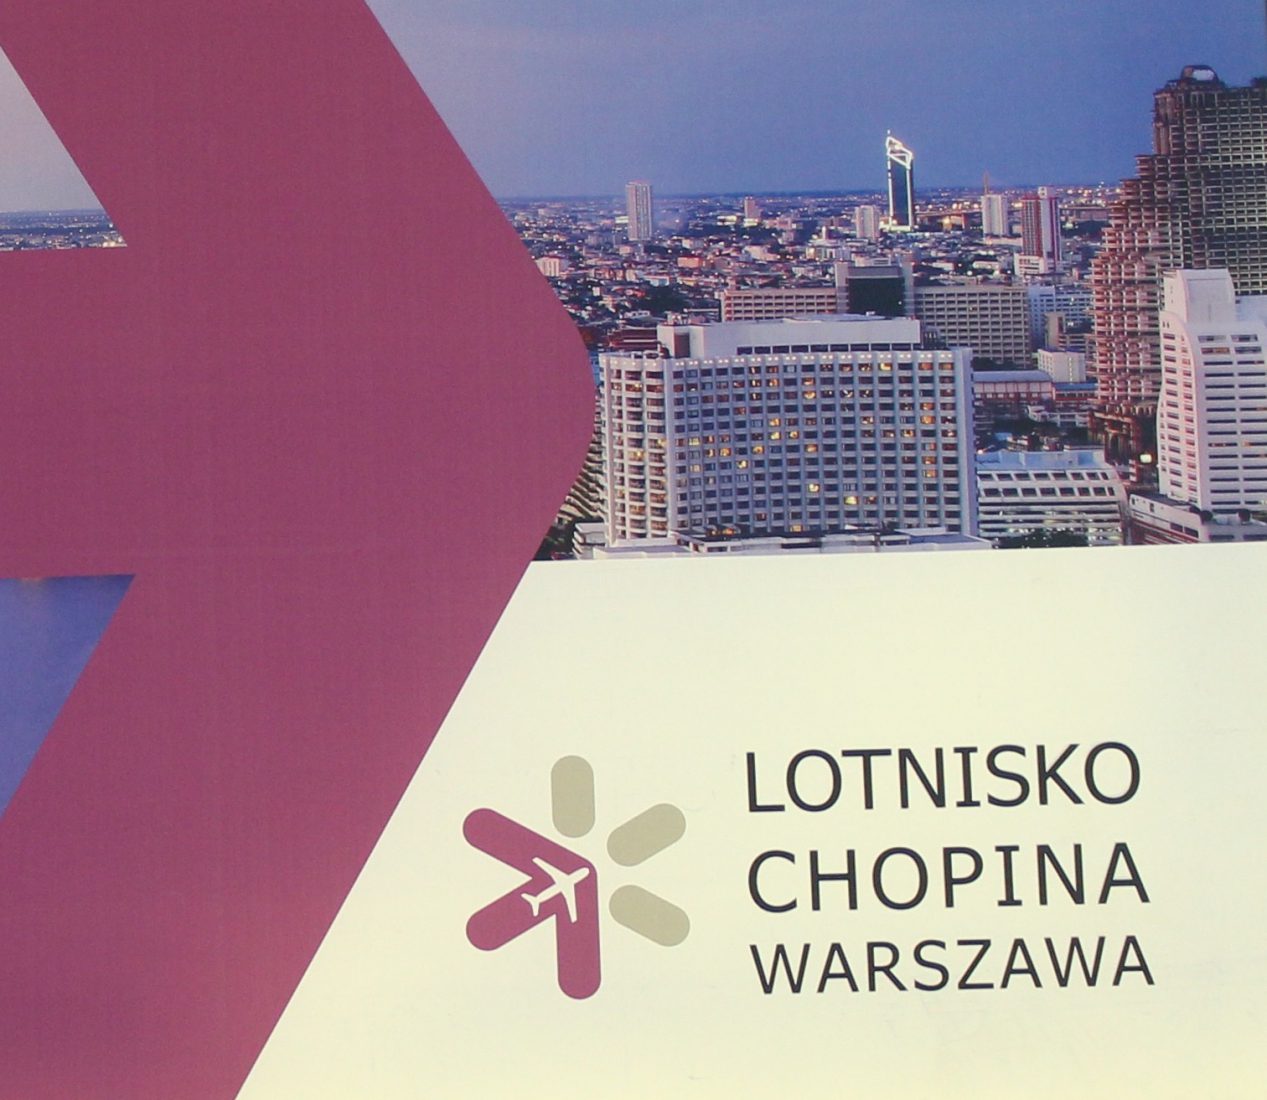 Pologne varsovie aéroport Chopin Publicité compagnie aérienne polonaise LOT 